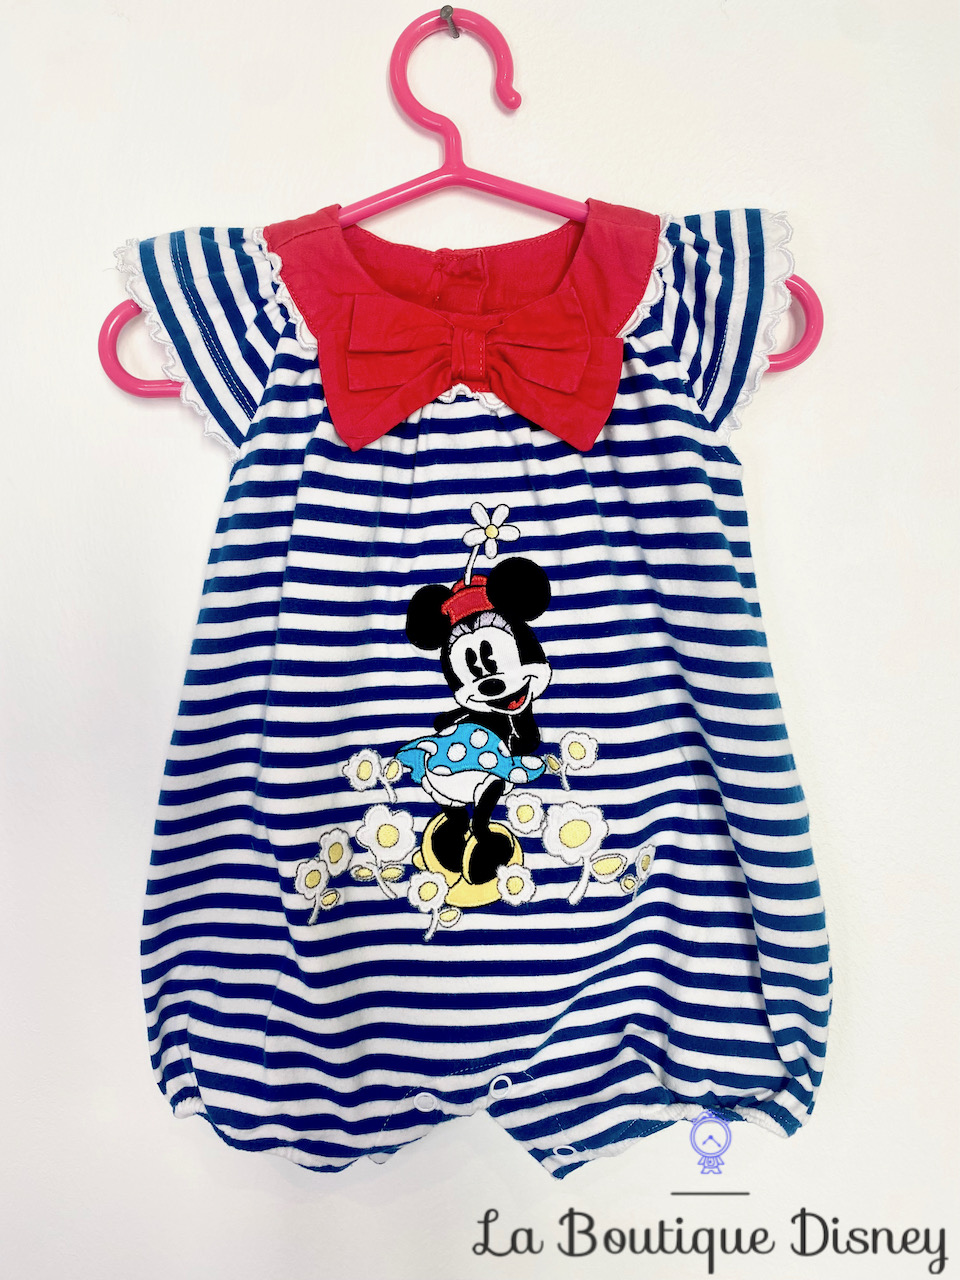 Vêtements - Bébés 0-24 mois Disney occasion pas cher - La Boutique